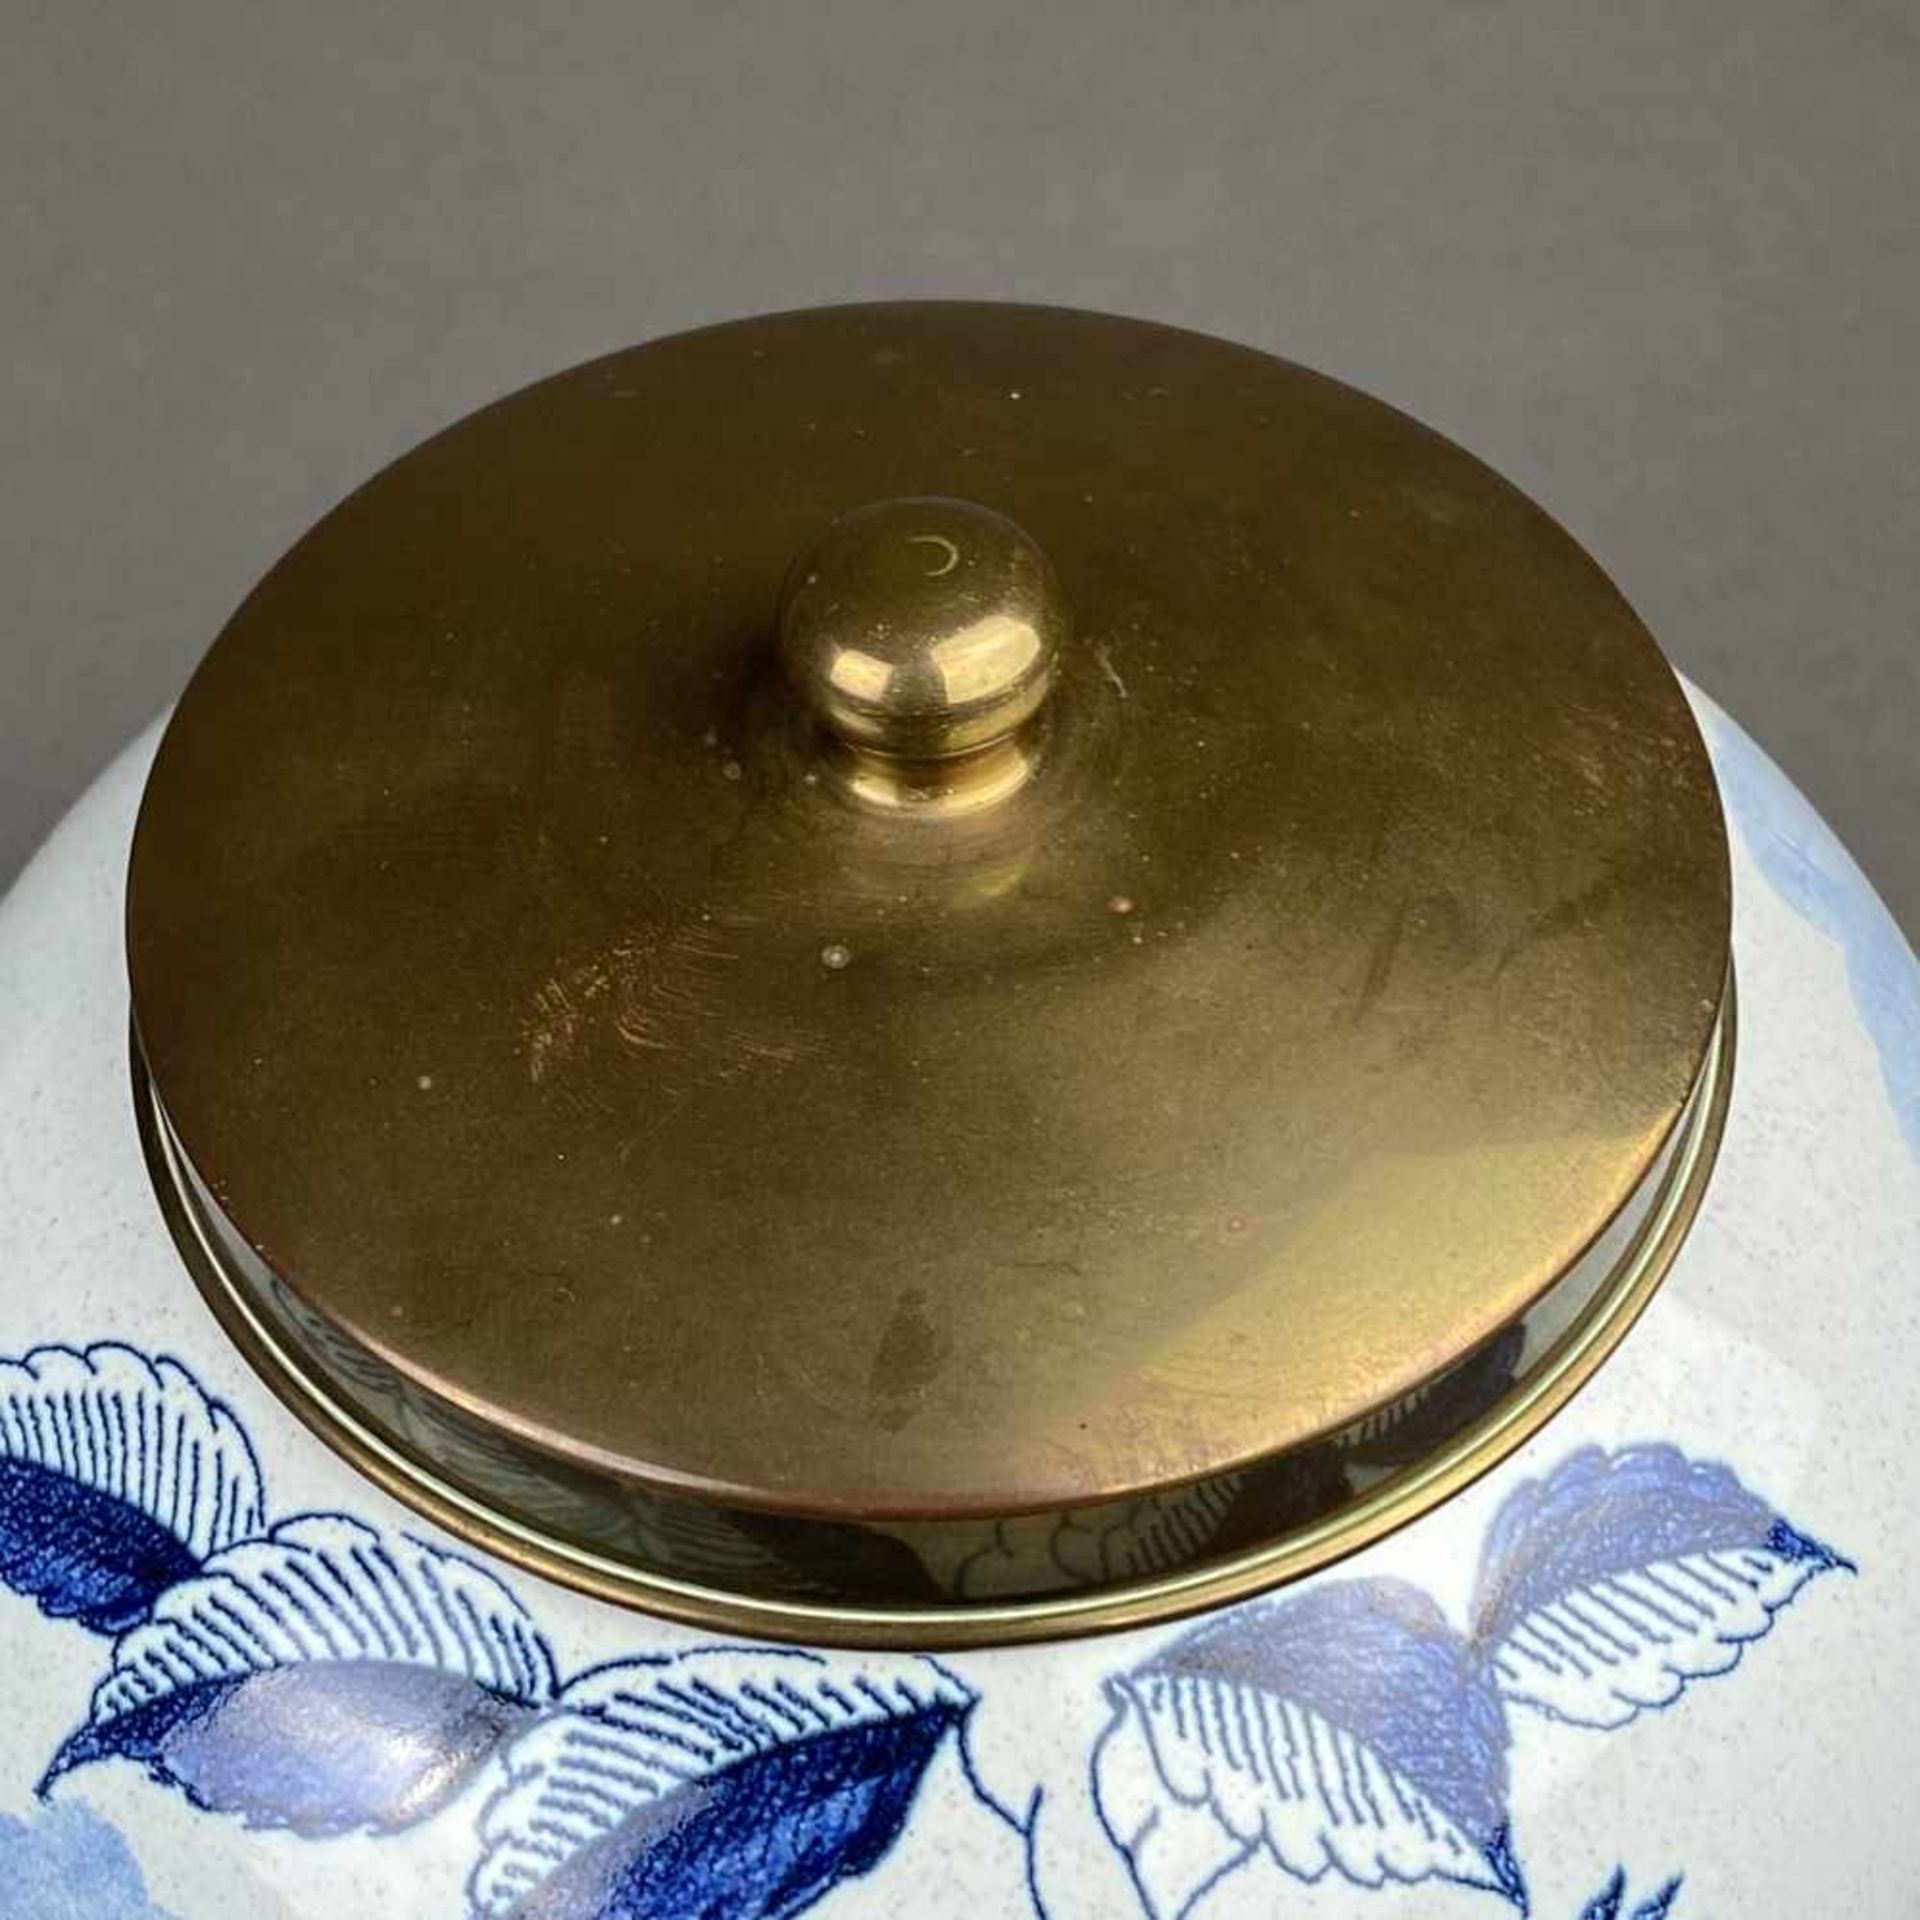 Tabaktopf - Holland, Keramik, blauer Dekor mit Aufschrift "Toeback", mit passendem Stöpsel und - Bild 2 aus 9